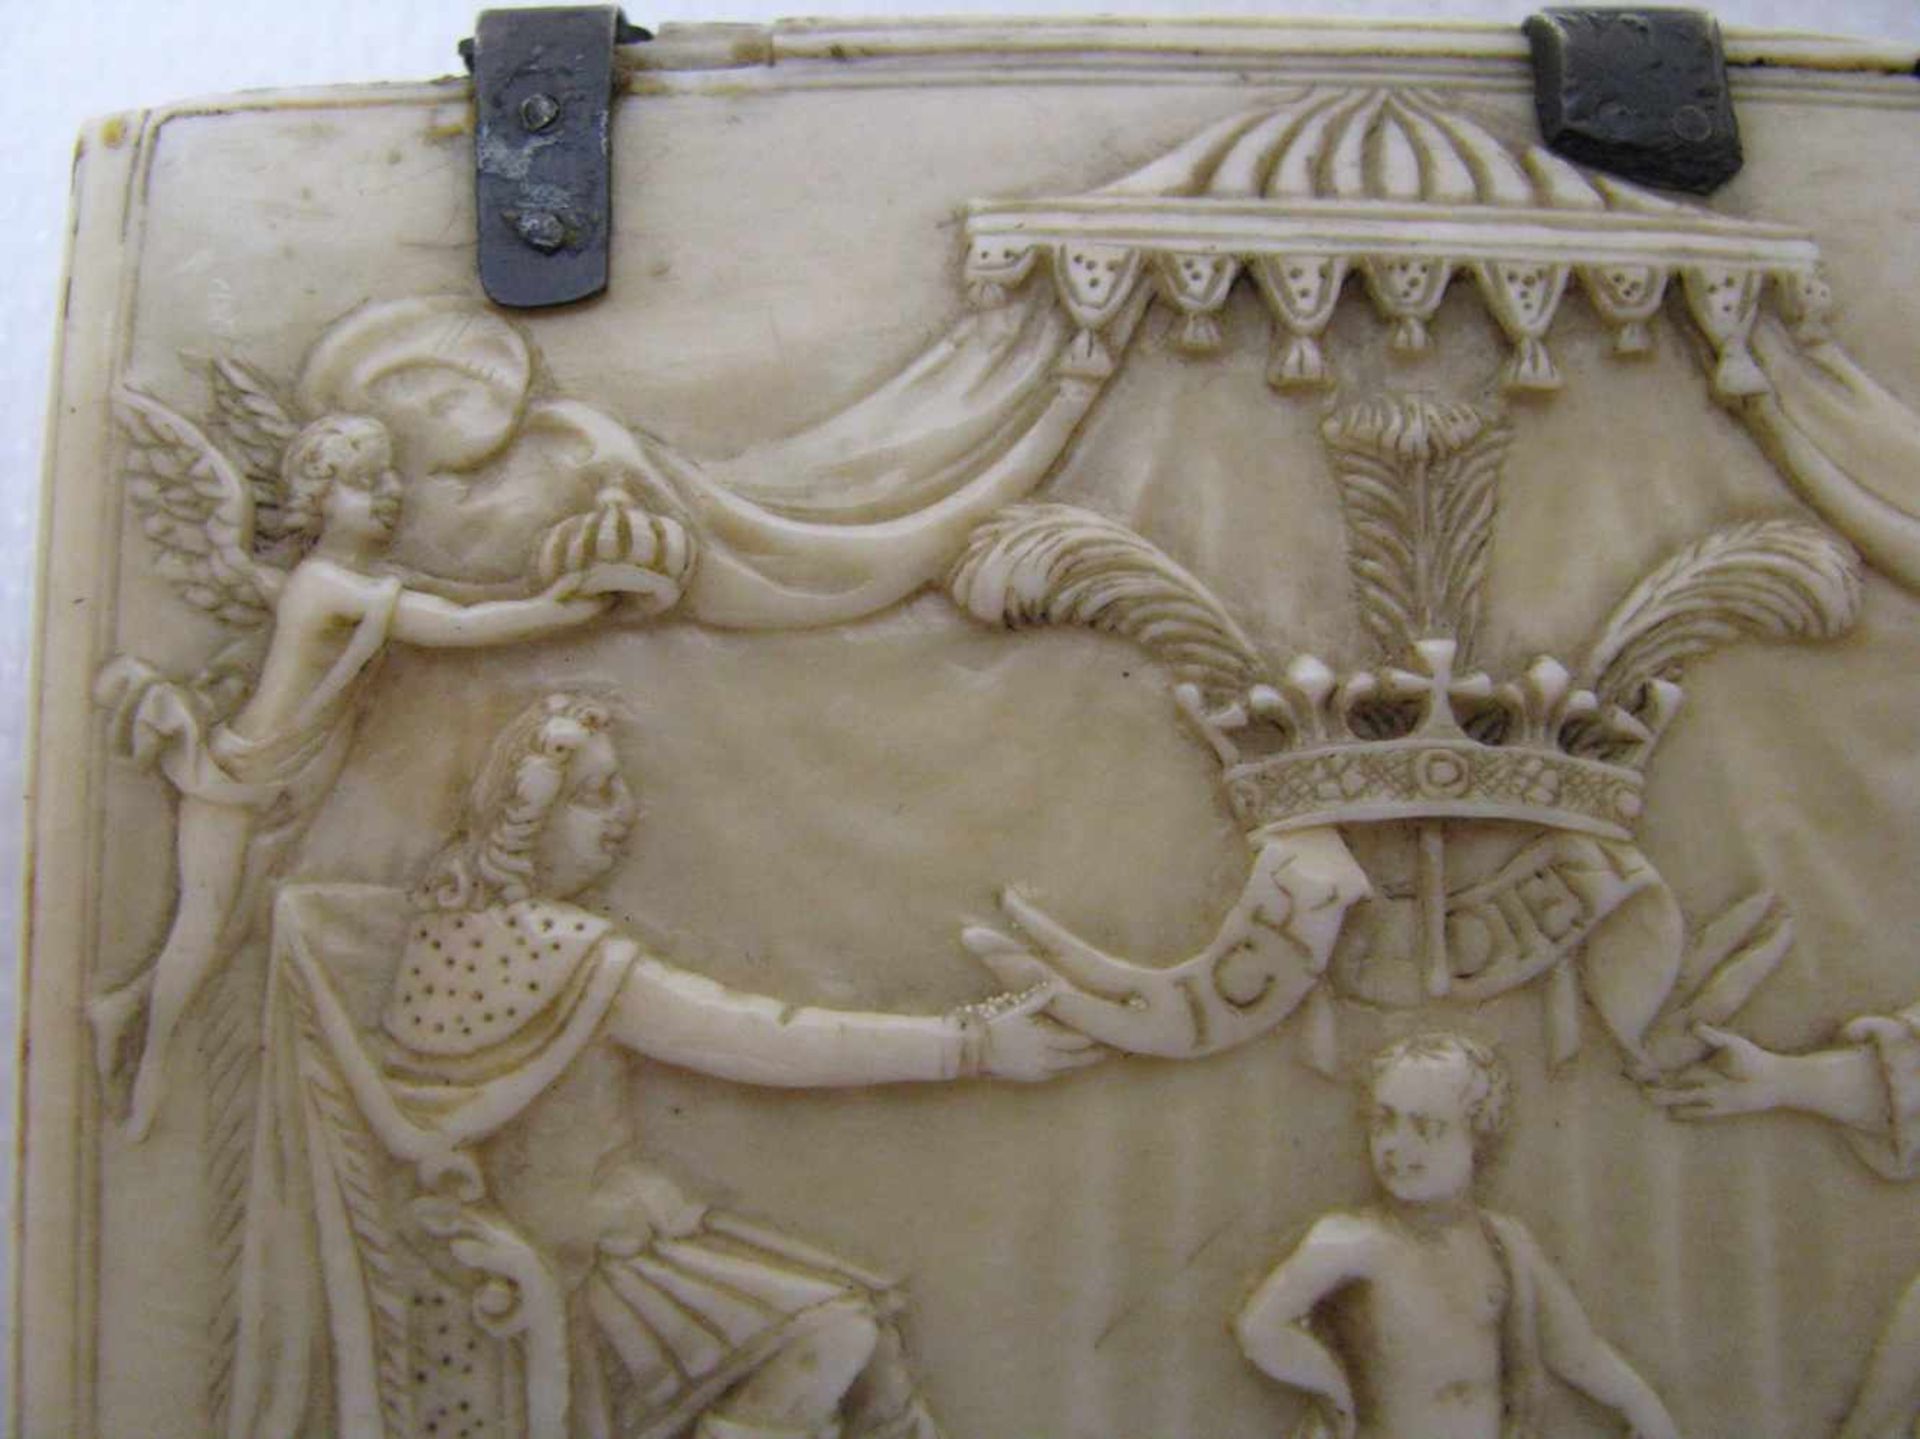 Seltene Schnupftabakdose, England, Wales, um 1700, Elfenbein fein beschnitzt mit Darstellung einer - Image 7 of 7